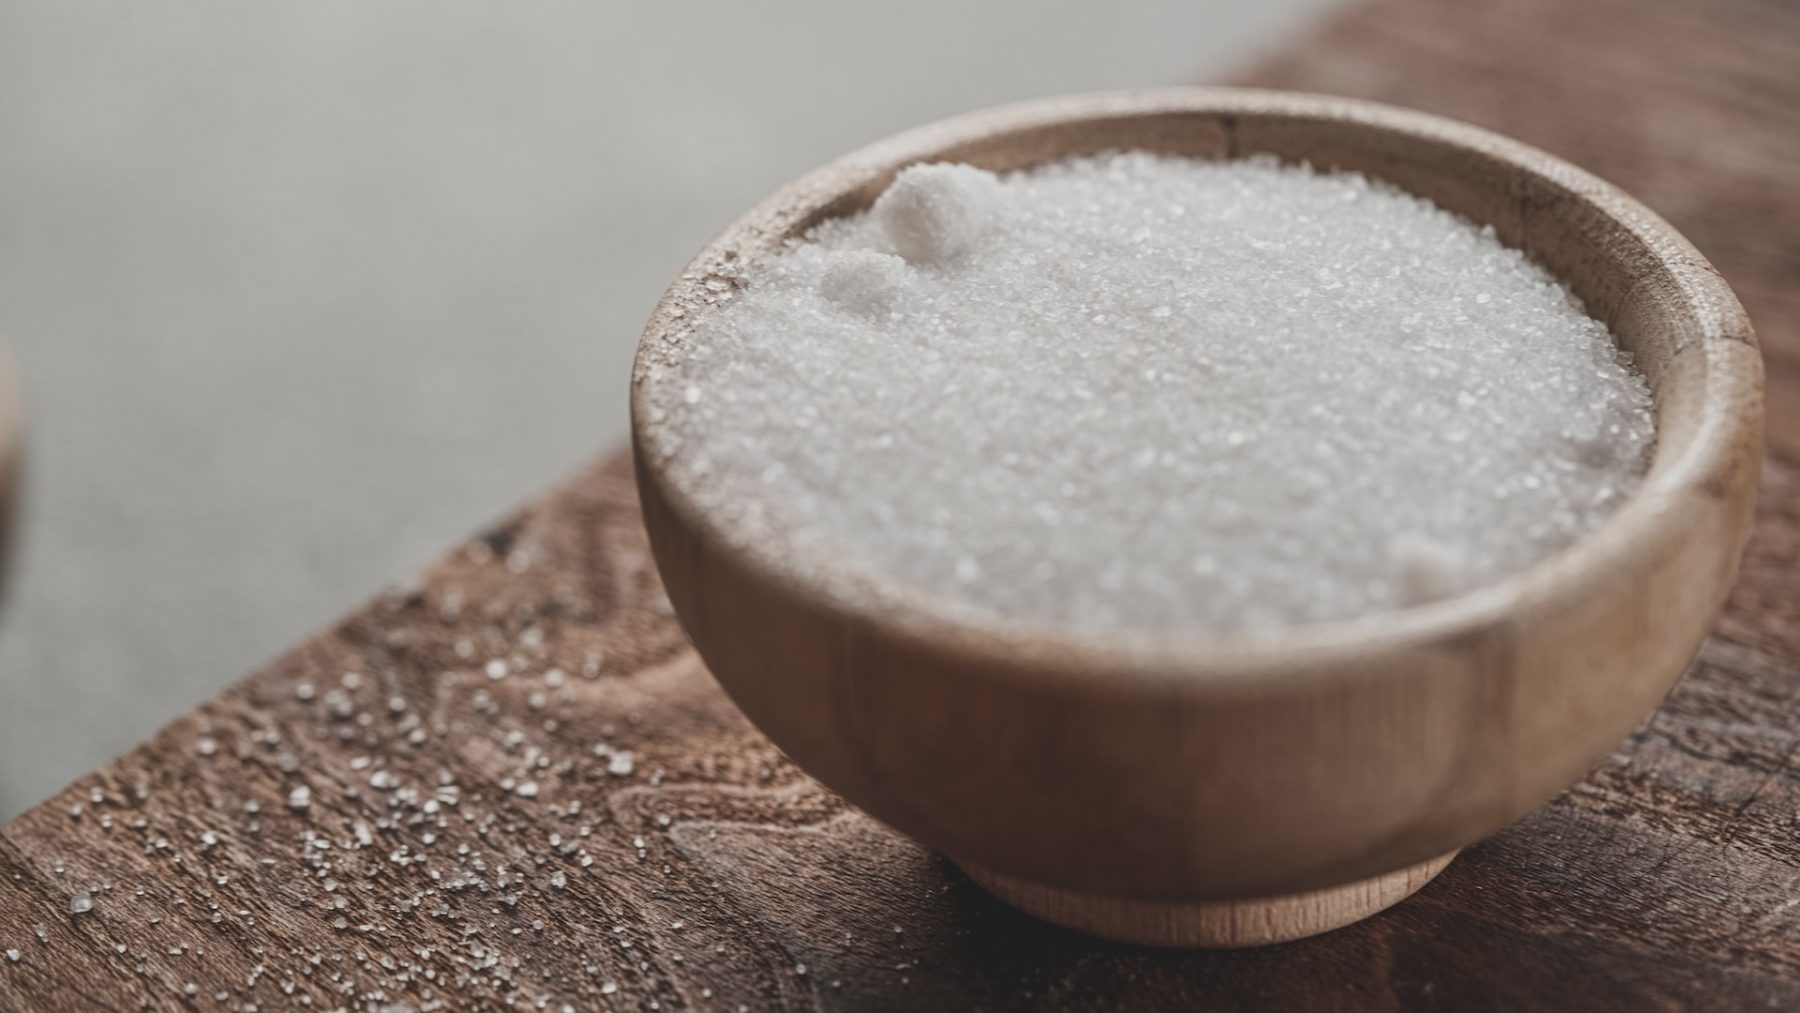 Scrub σώματος: Να προτιμήσω Scrub με ζάχαρη ή με αλάτι;